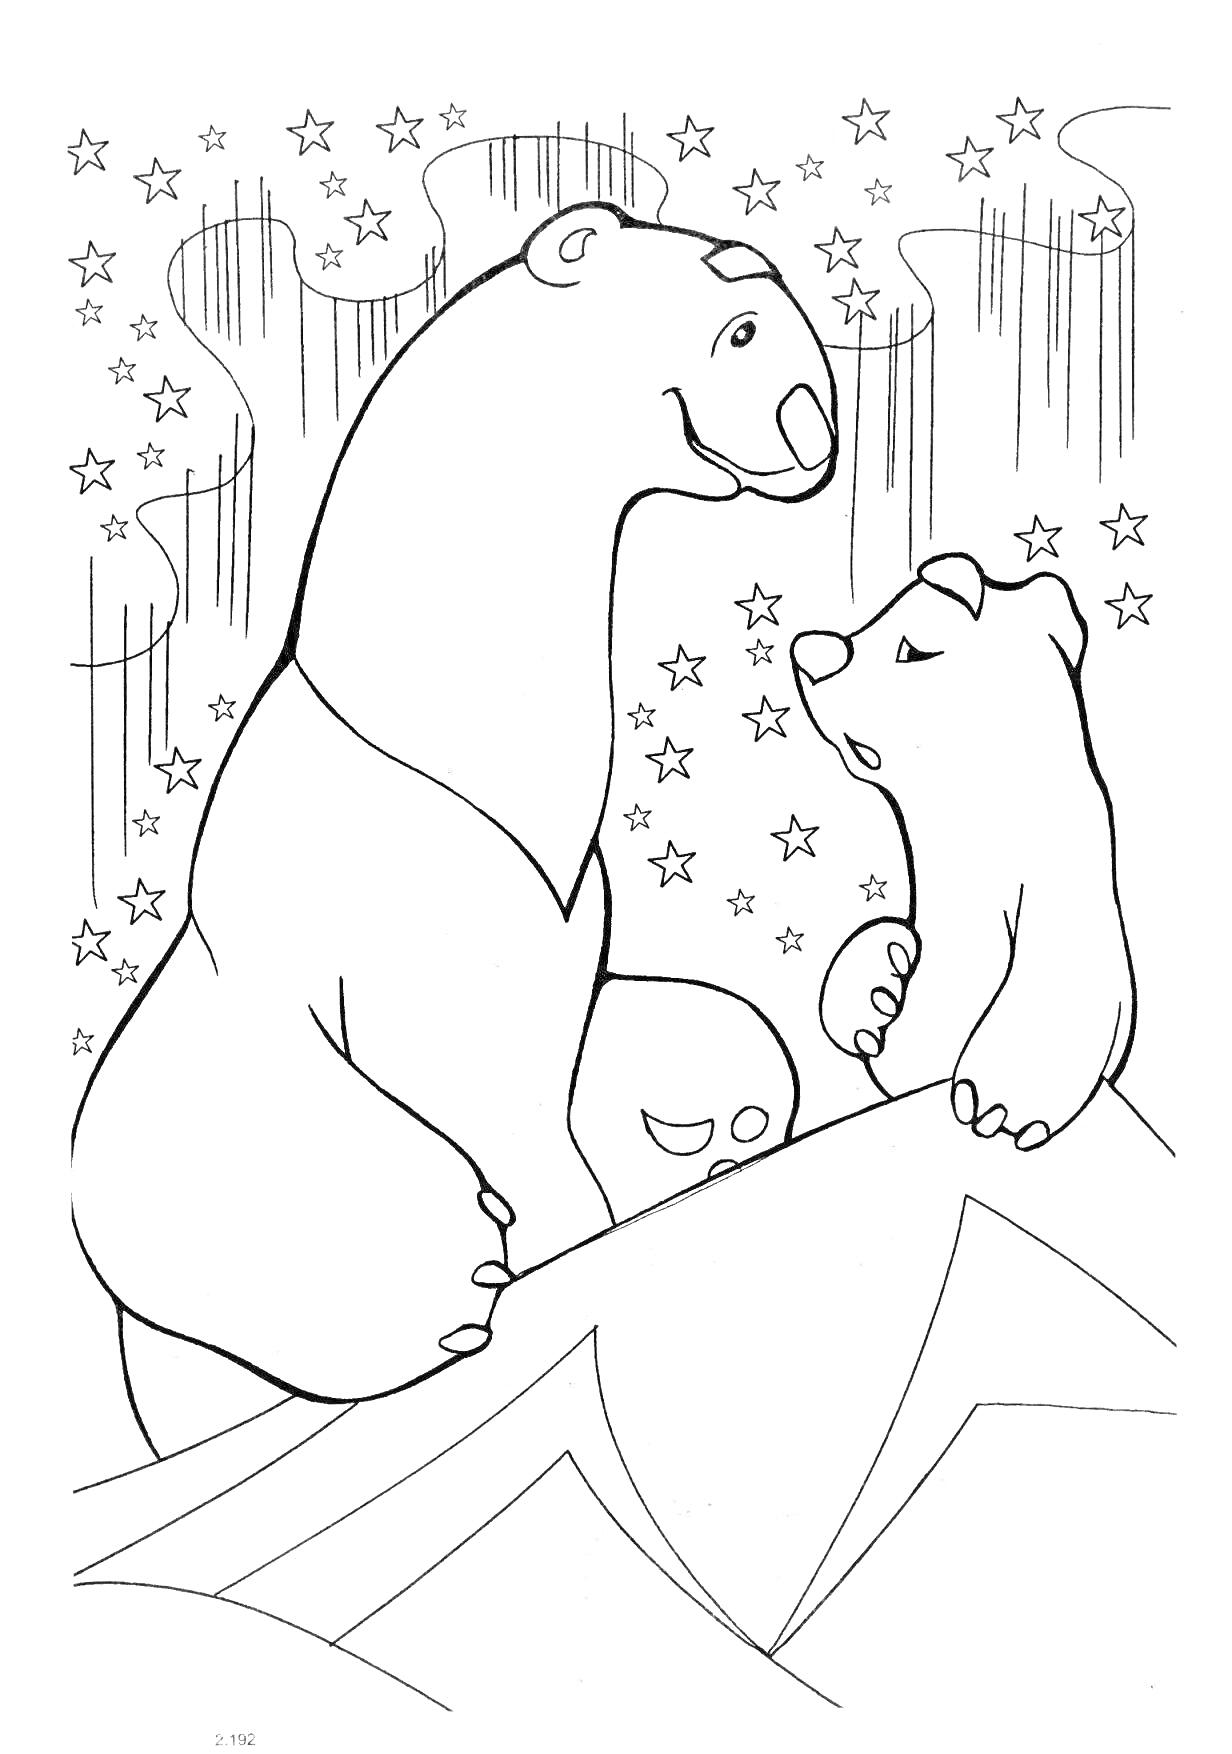 Умка разговаривает с медвежонком на фоне звездного неба